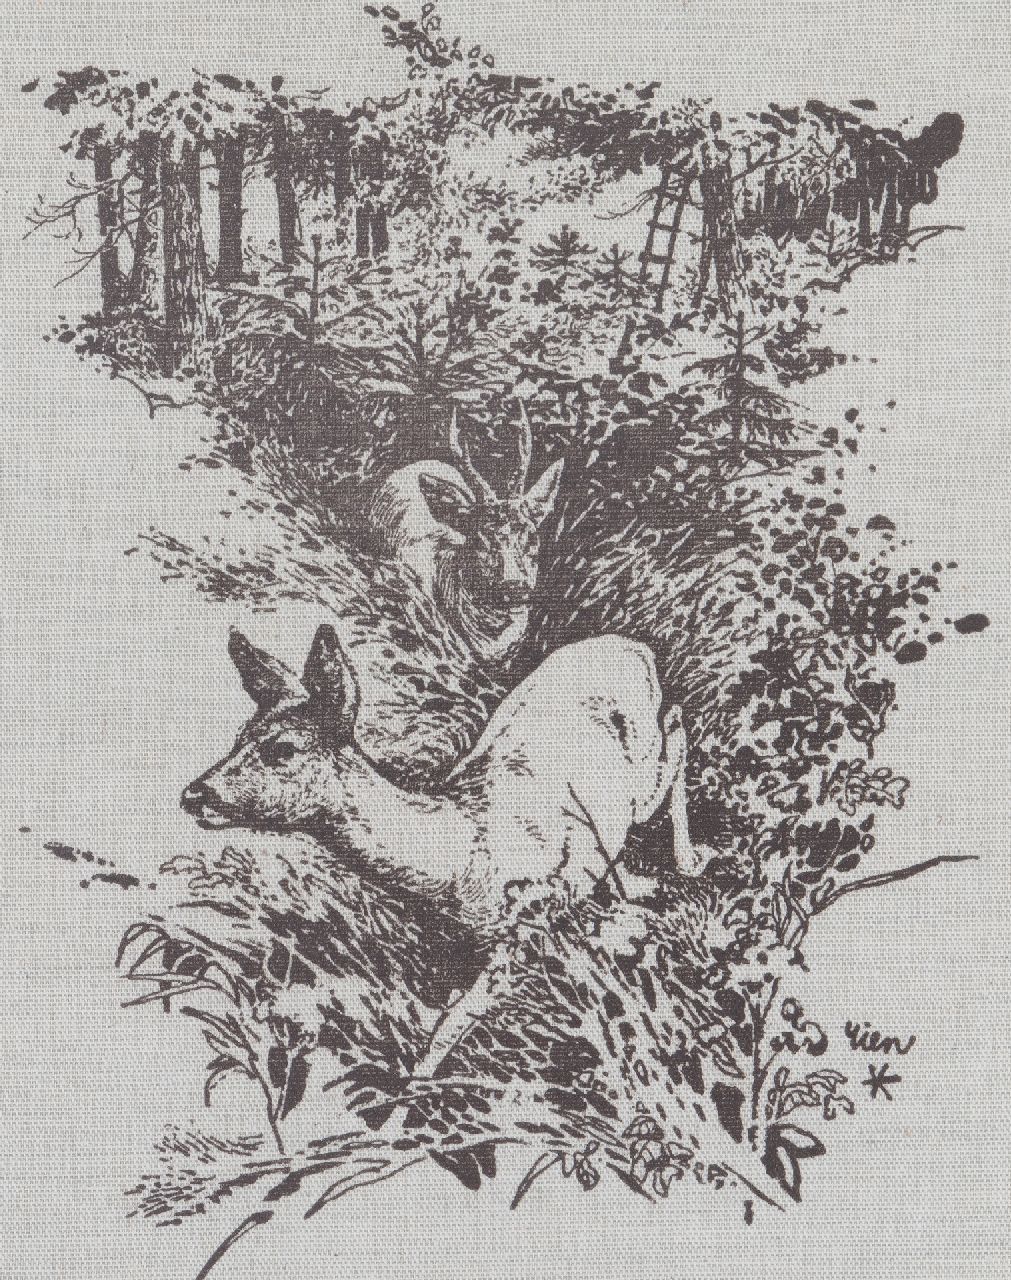 Poortvliet R.  | Rien Poortvliet, Two deers, print on canvas 32.0 x 25.5 cm, signed l.r.